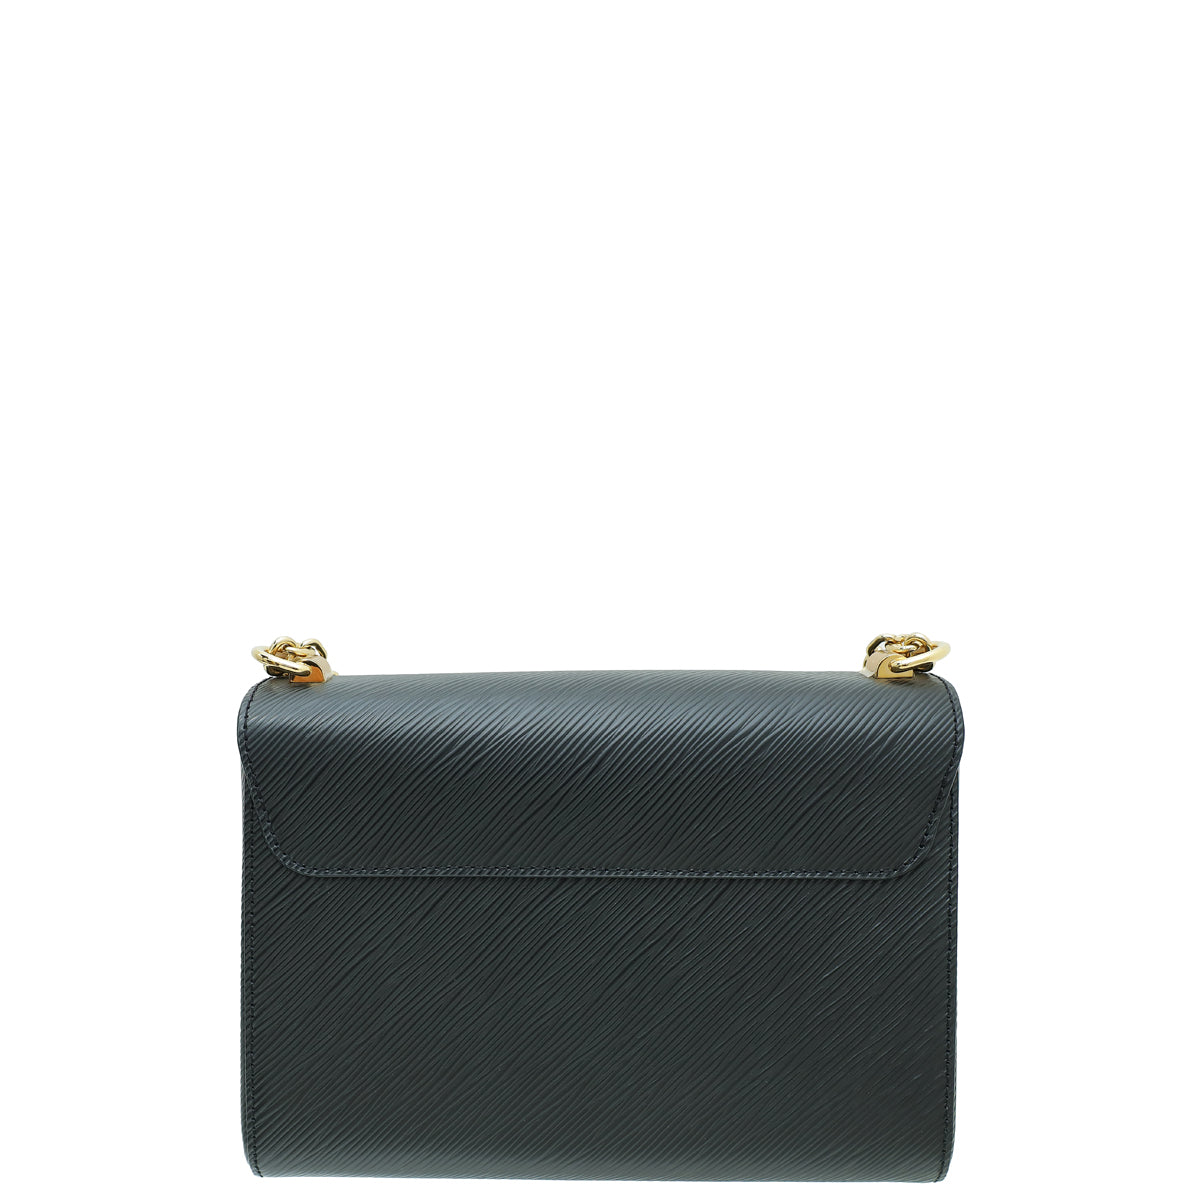 Louis Vuitton Noir Twist MM Bag